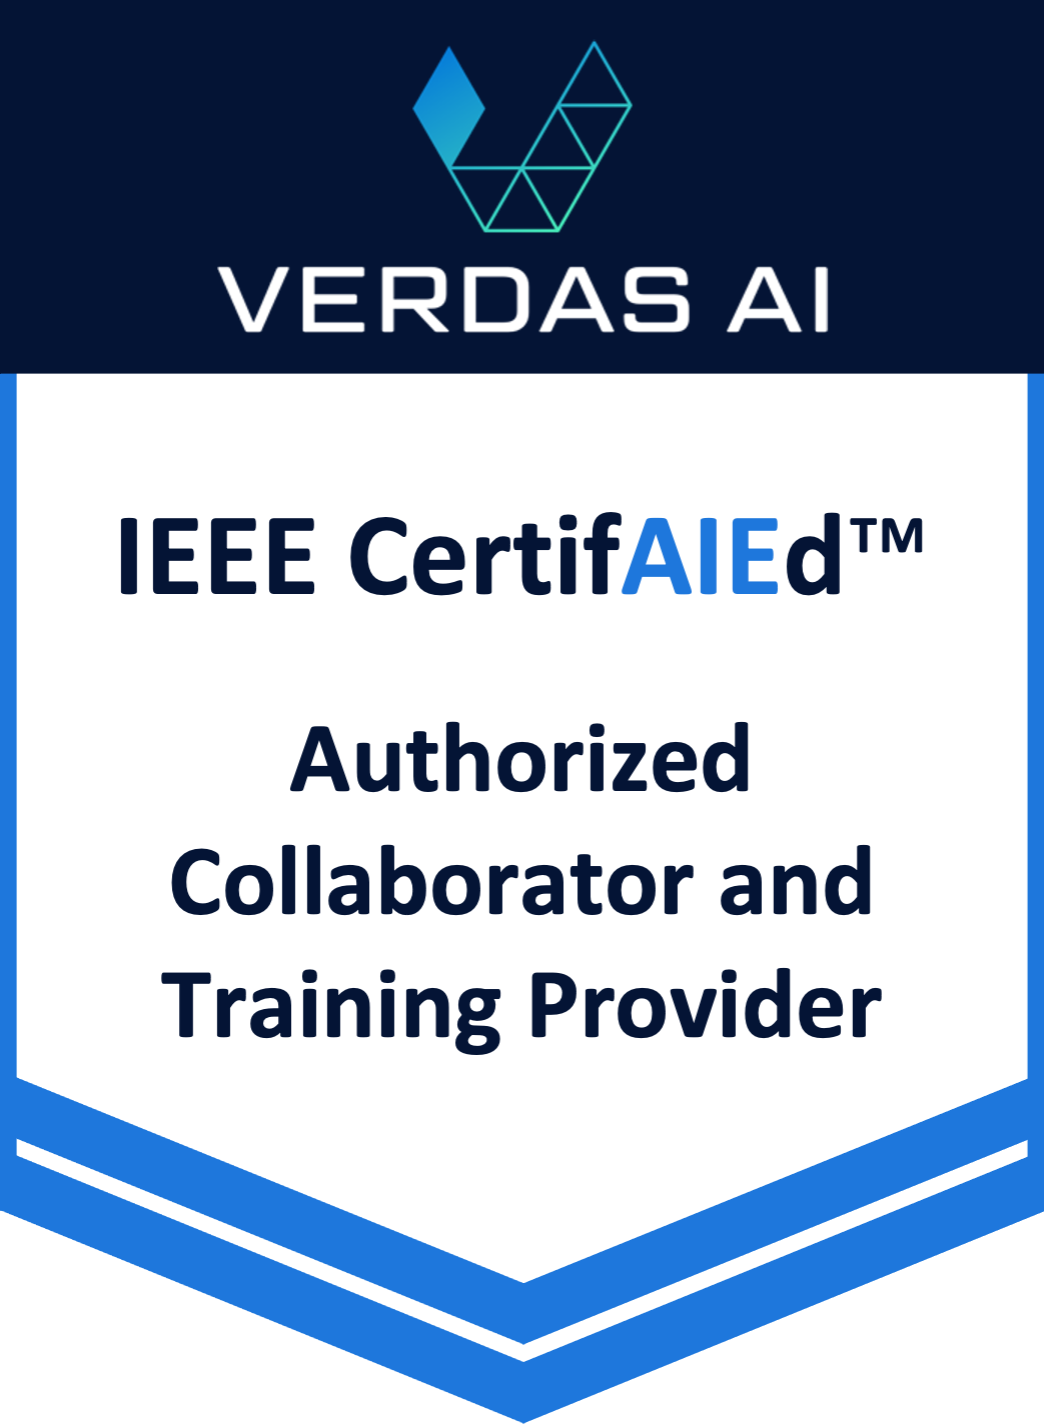 IEEE Certifaied Assessment